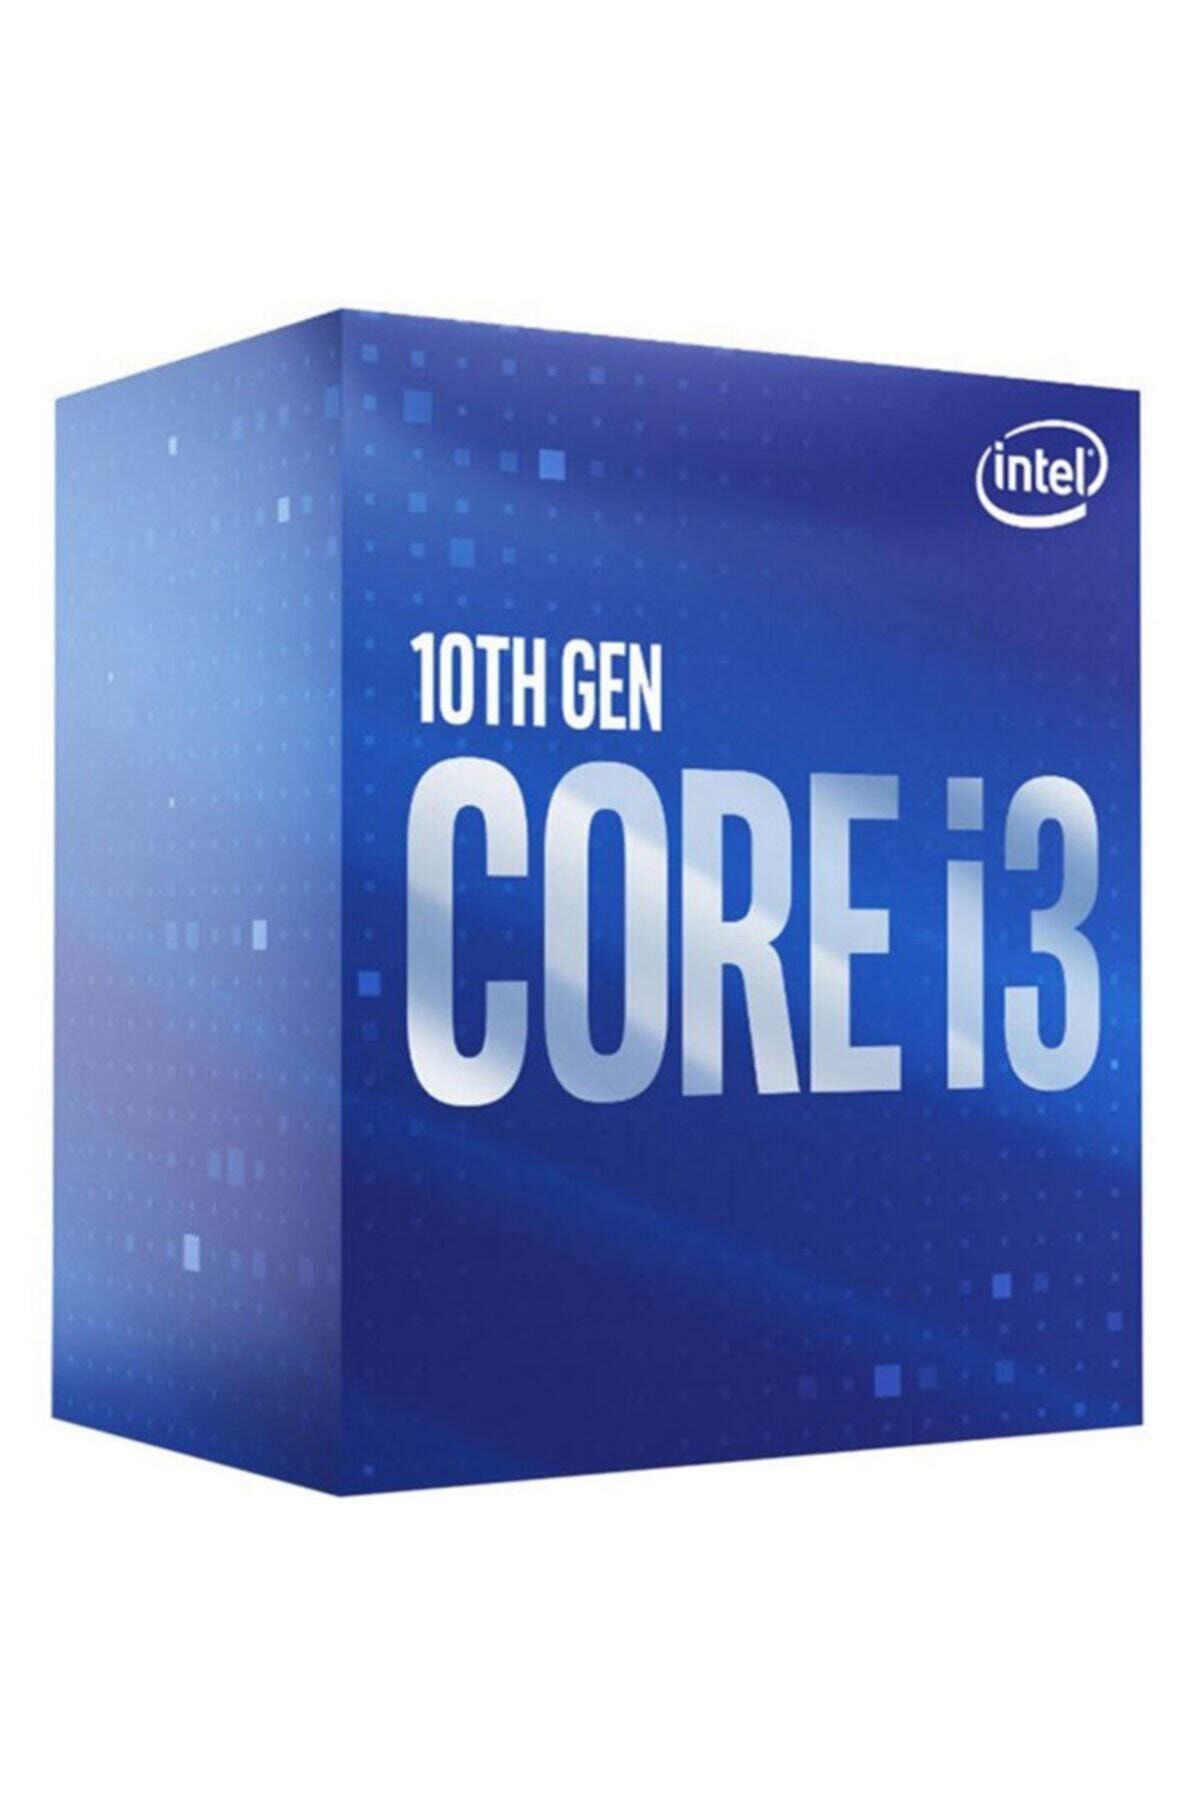 Intel Core I3-10105f